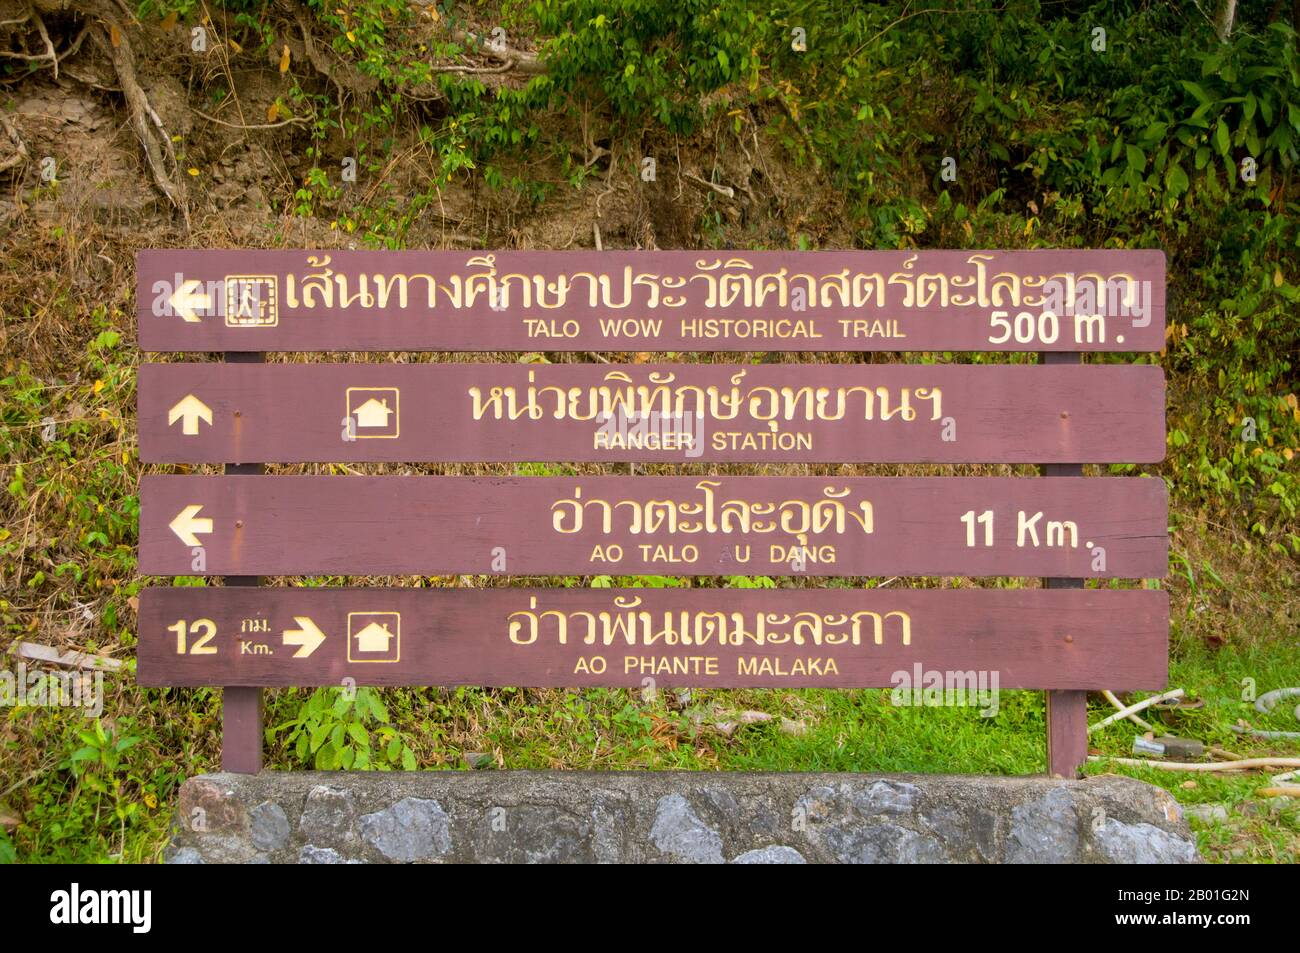 Thailand: Wegweiser, Ao Taloh Udang, Ko Tarutao Marine National Park, Ko Tarutao. In der Vergangenheit wurde Ao Taloh Udang als isoliertes Lager für politische Gefangene genutzt, aber heute sind nur noch wenige Anzeichen für diese Strafregelung übrig. Der Marine-Nationalpark Ko Tarutao besteht aus 51 Inseln in zwei Hauptgruppen, die über die Andamanensee im südlichsten Thailand verstreut sind. Nur sieben der Inseln haben jede Größe, einschließlich Ko Tarutao im Osten und Ko Adang-Ko Rawi im Westen. Stockfoto